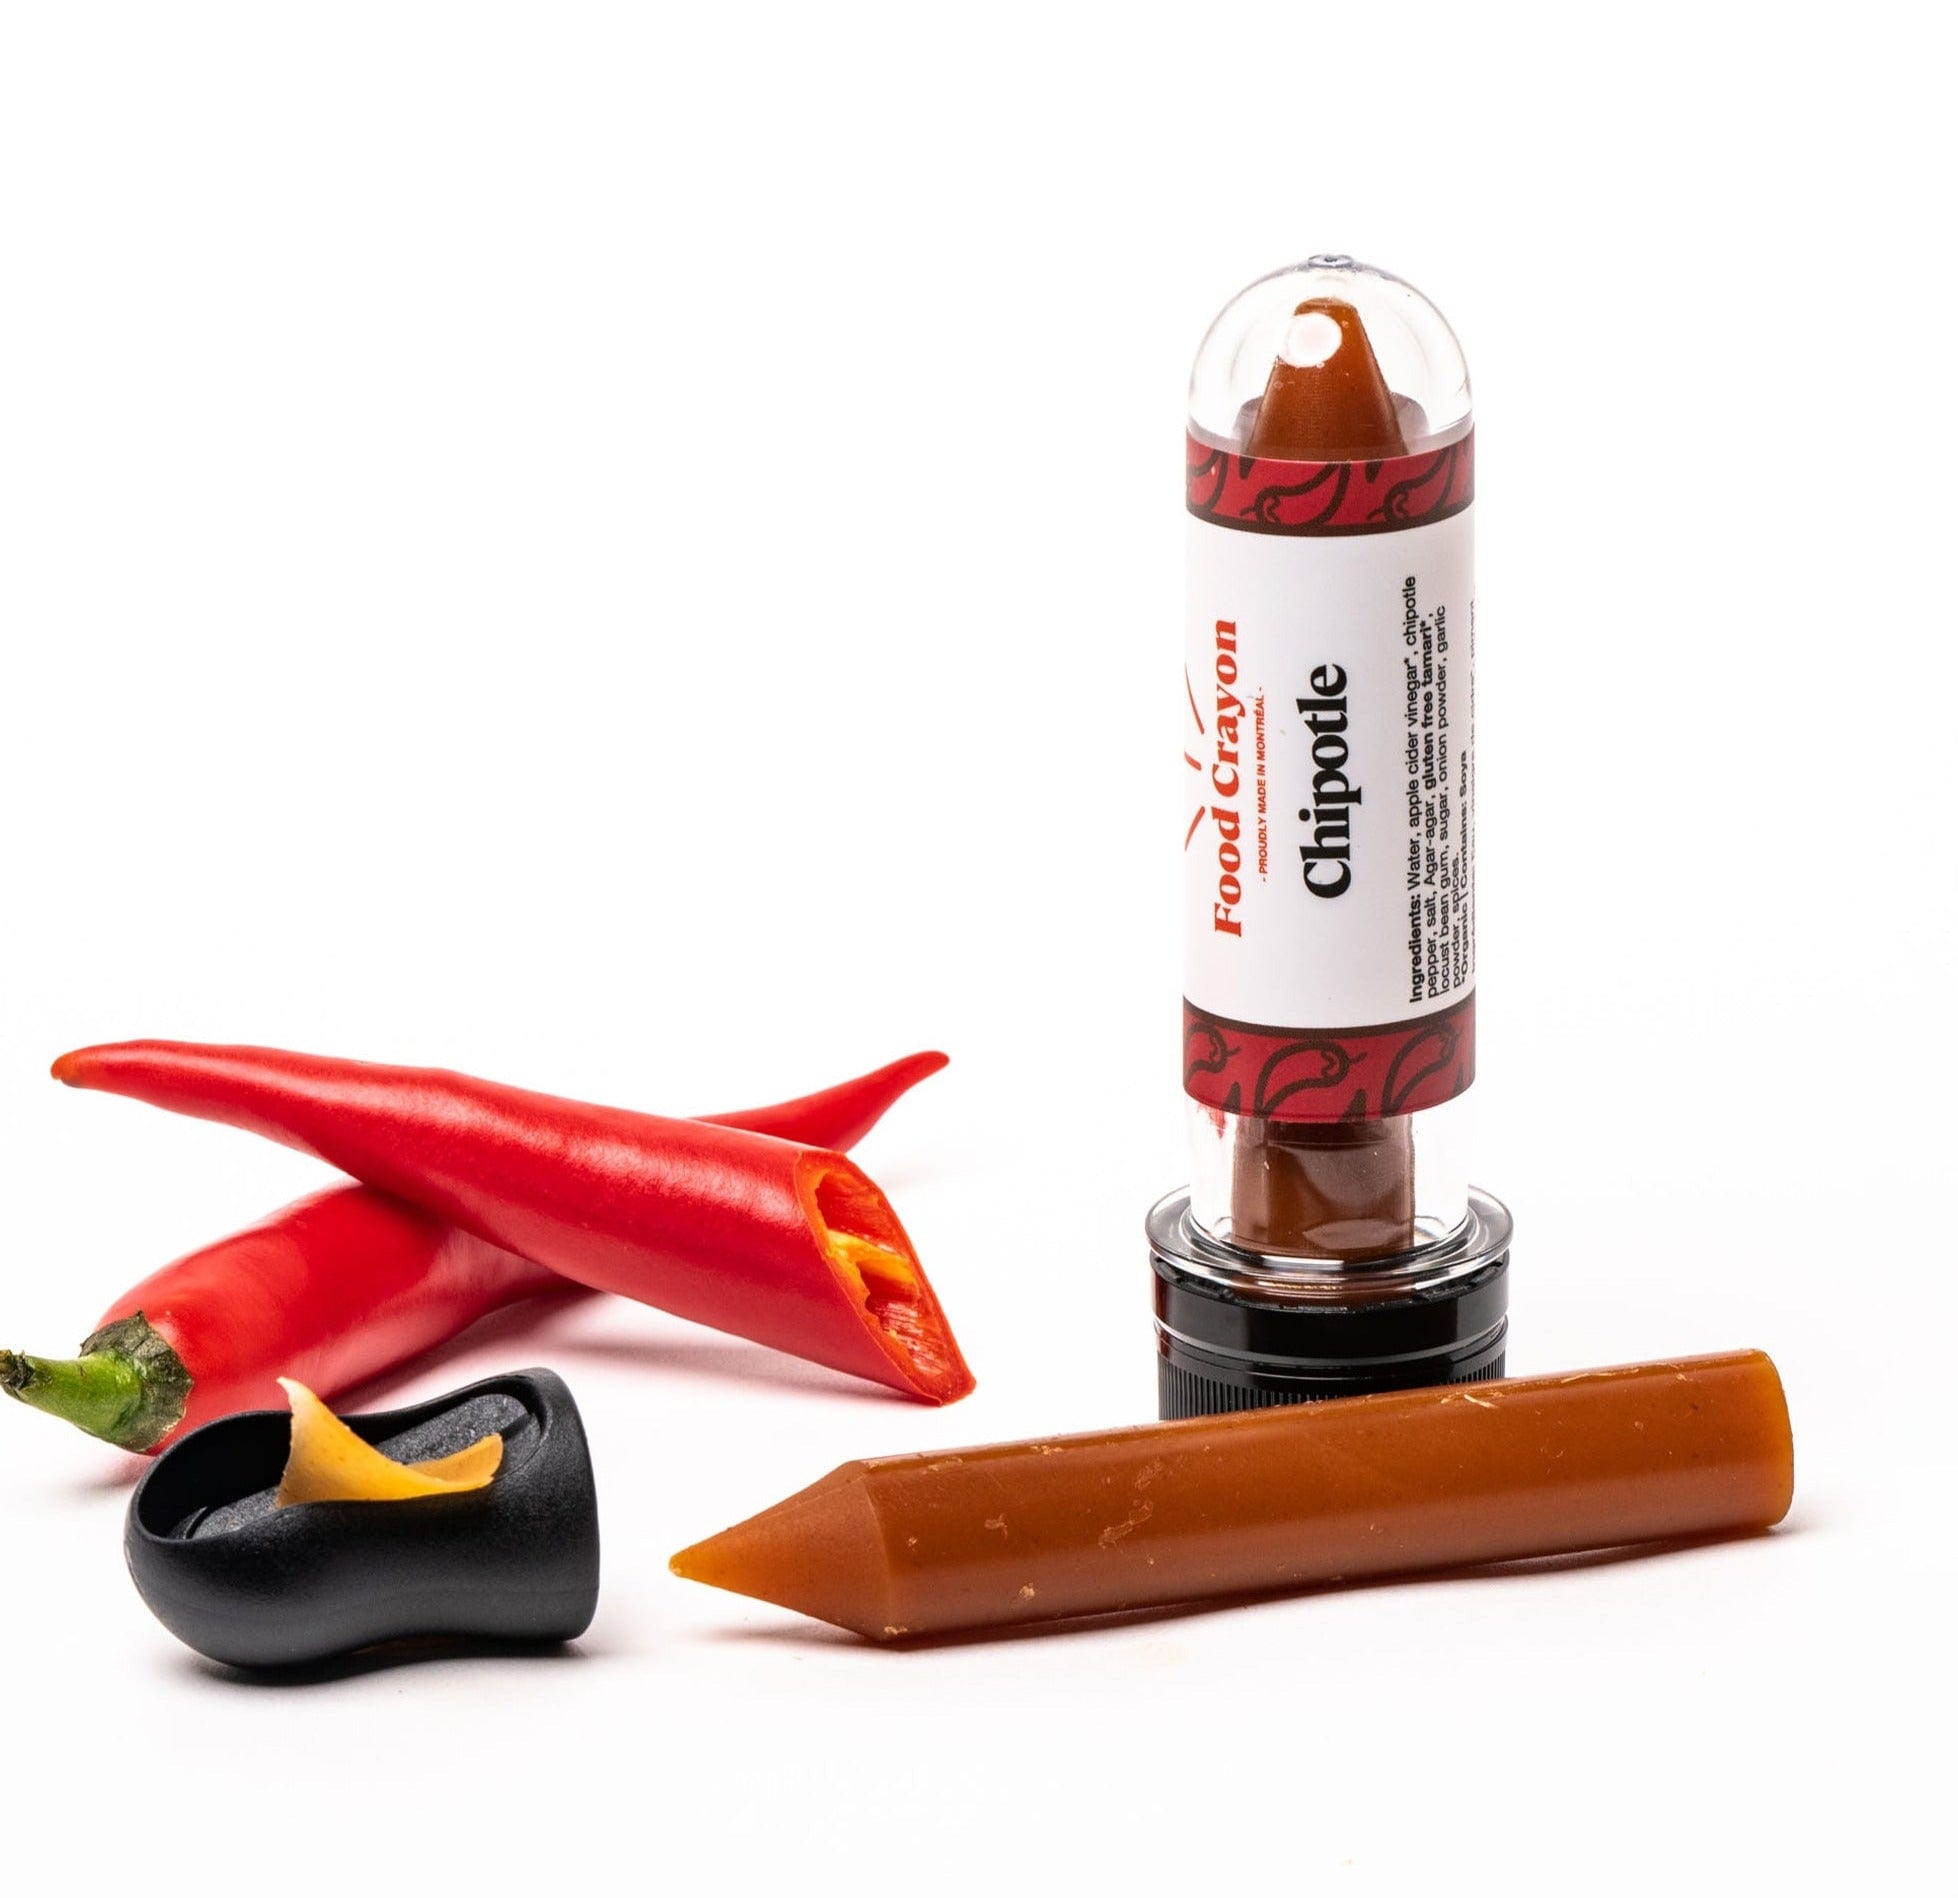 Crayon d'épices en recharge | Choisissez une saveur